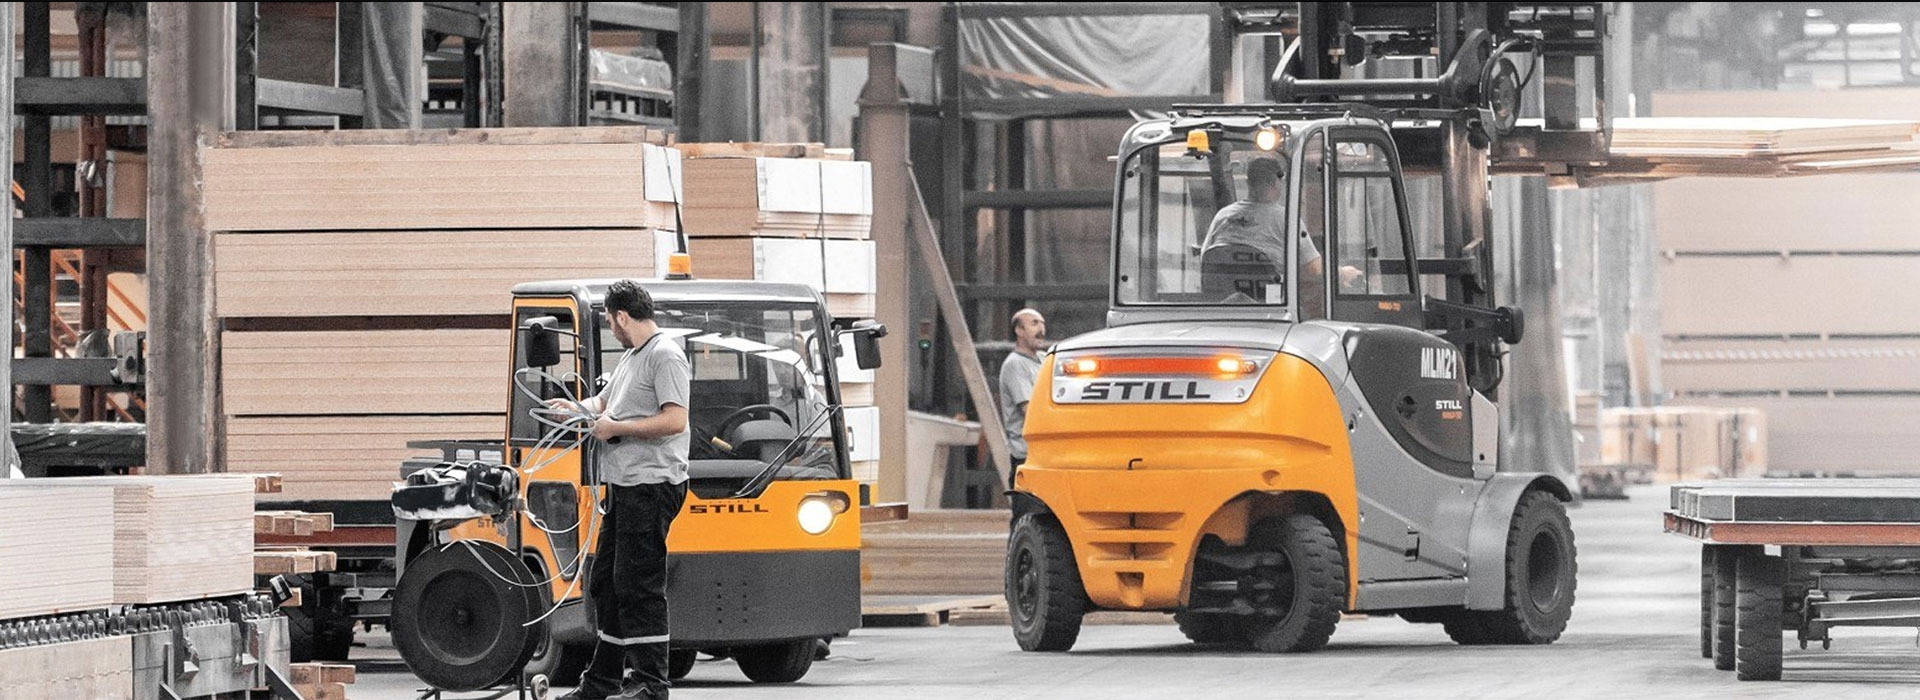 Still Forklift EM: Sahibinden Satılık, Kiralık Forklift ve Forklift Servisi